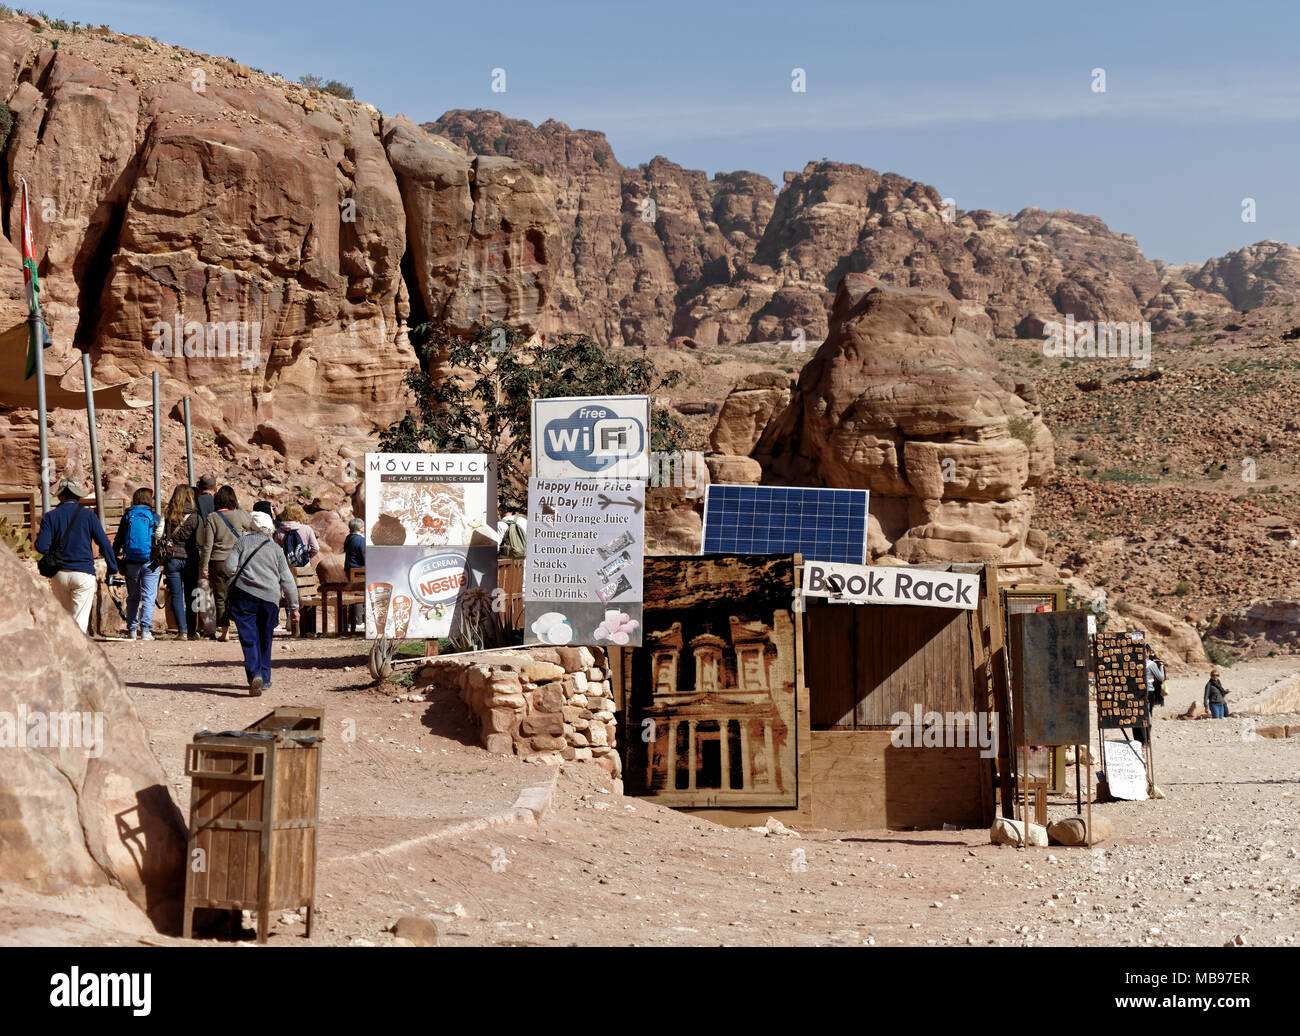 Petra, Wadi Musa, la Jordanie, le 9 mars 2018 : un étal avec de nombreux signes de rafraîchissements, livres et souvenirs touristiques Banque D'Images